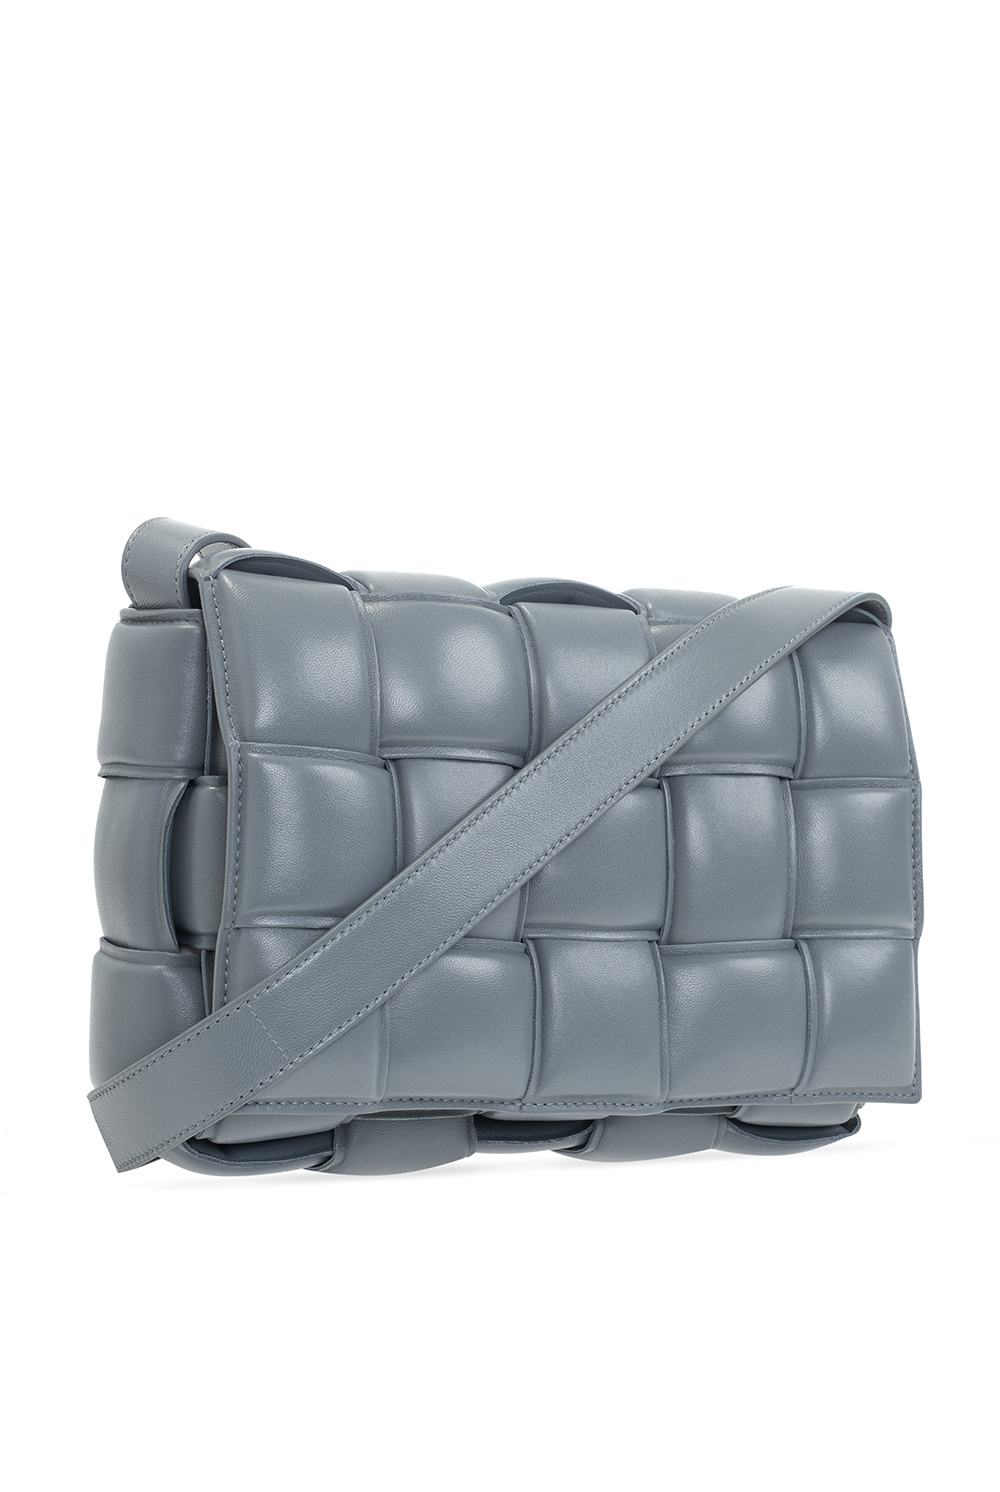 Bottega Veneta Women's Padded Cassette Shoulder Bag